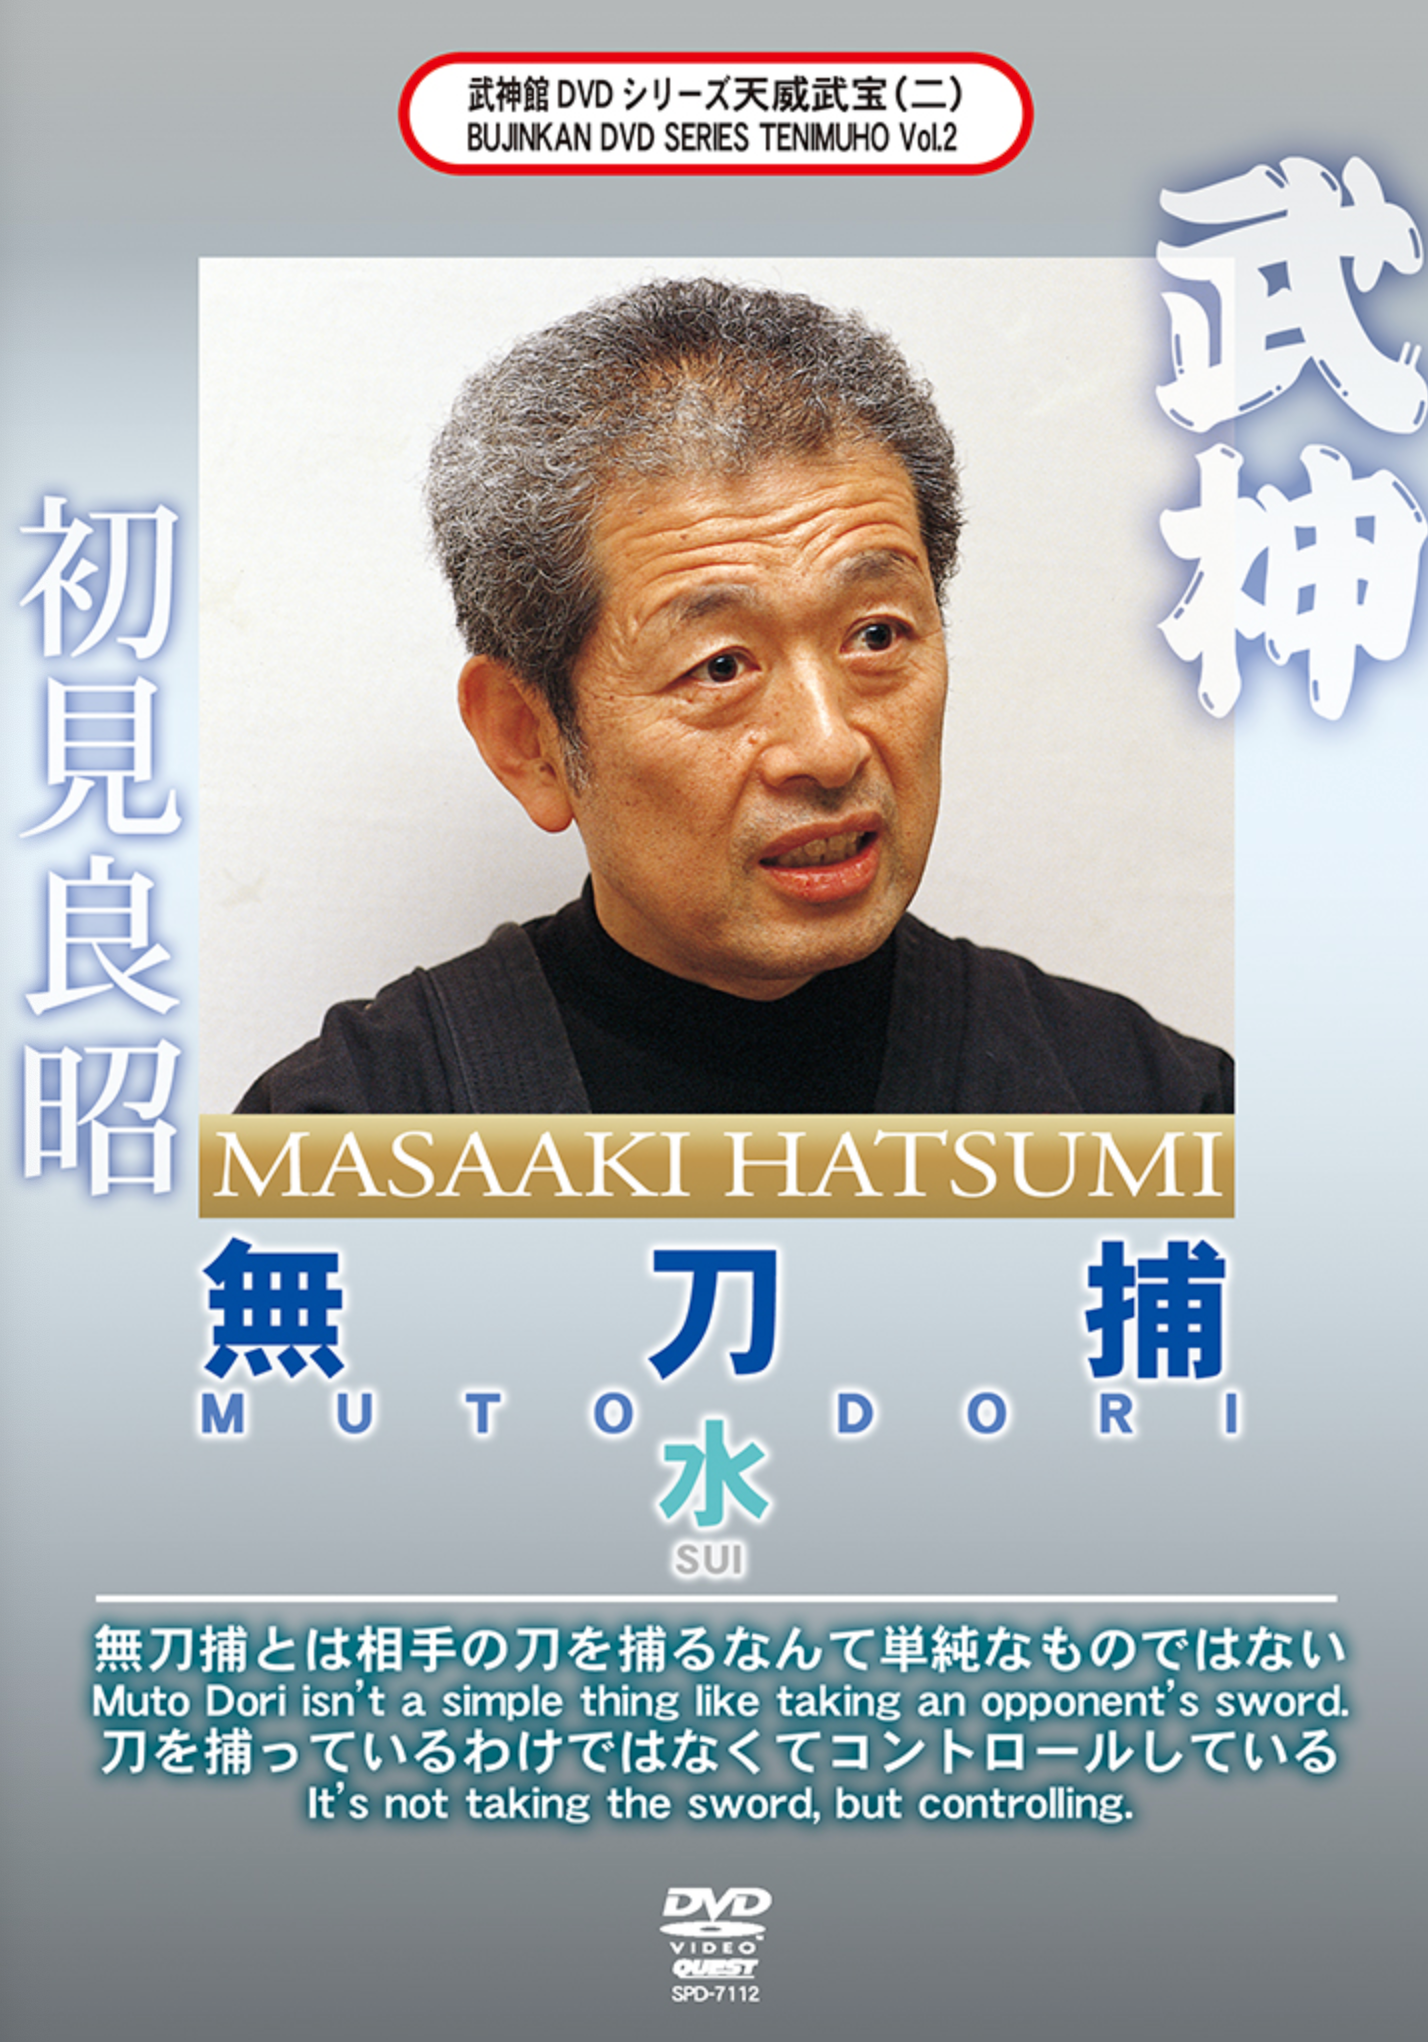 Bujinkan Mutodori Sui DVD with Masaaki Hatsumi - Budovideos Inc